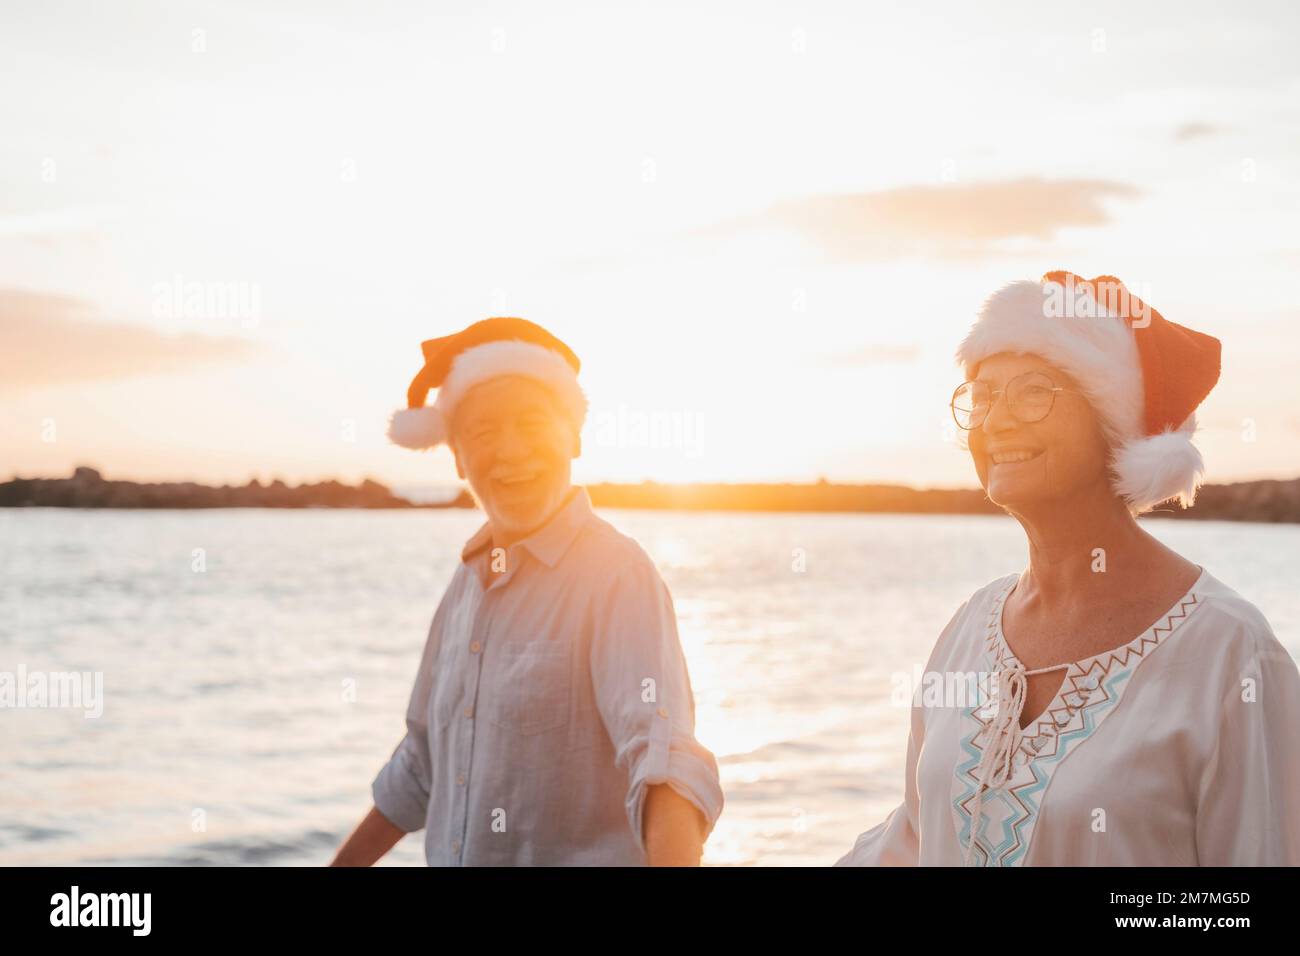 Ein altes, süßes Paar reifer Leute, die sich am Strand amüsieren und Spaß miteinander haben und an Feiertagen Weihnachtshüte tragen. Spaziergang am Strand mit Sonnenuntergang im Hintergrund im Winter. Stockfoto